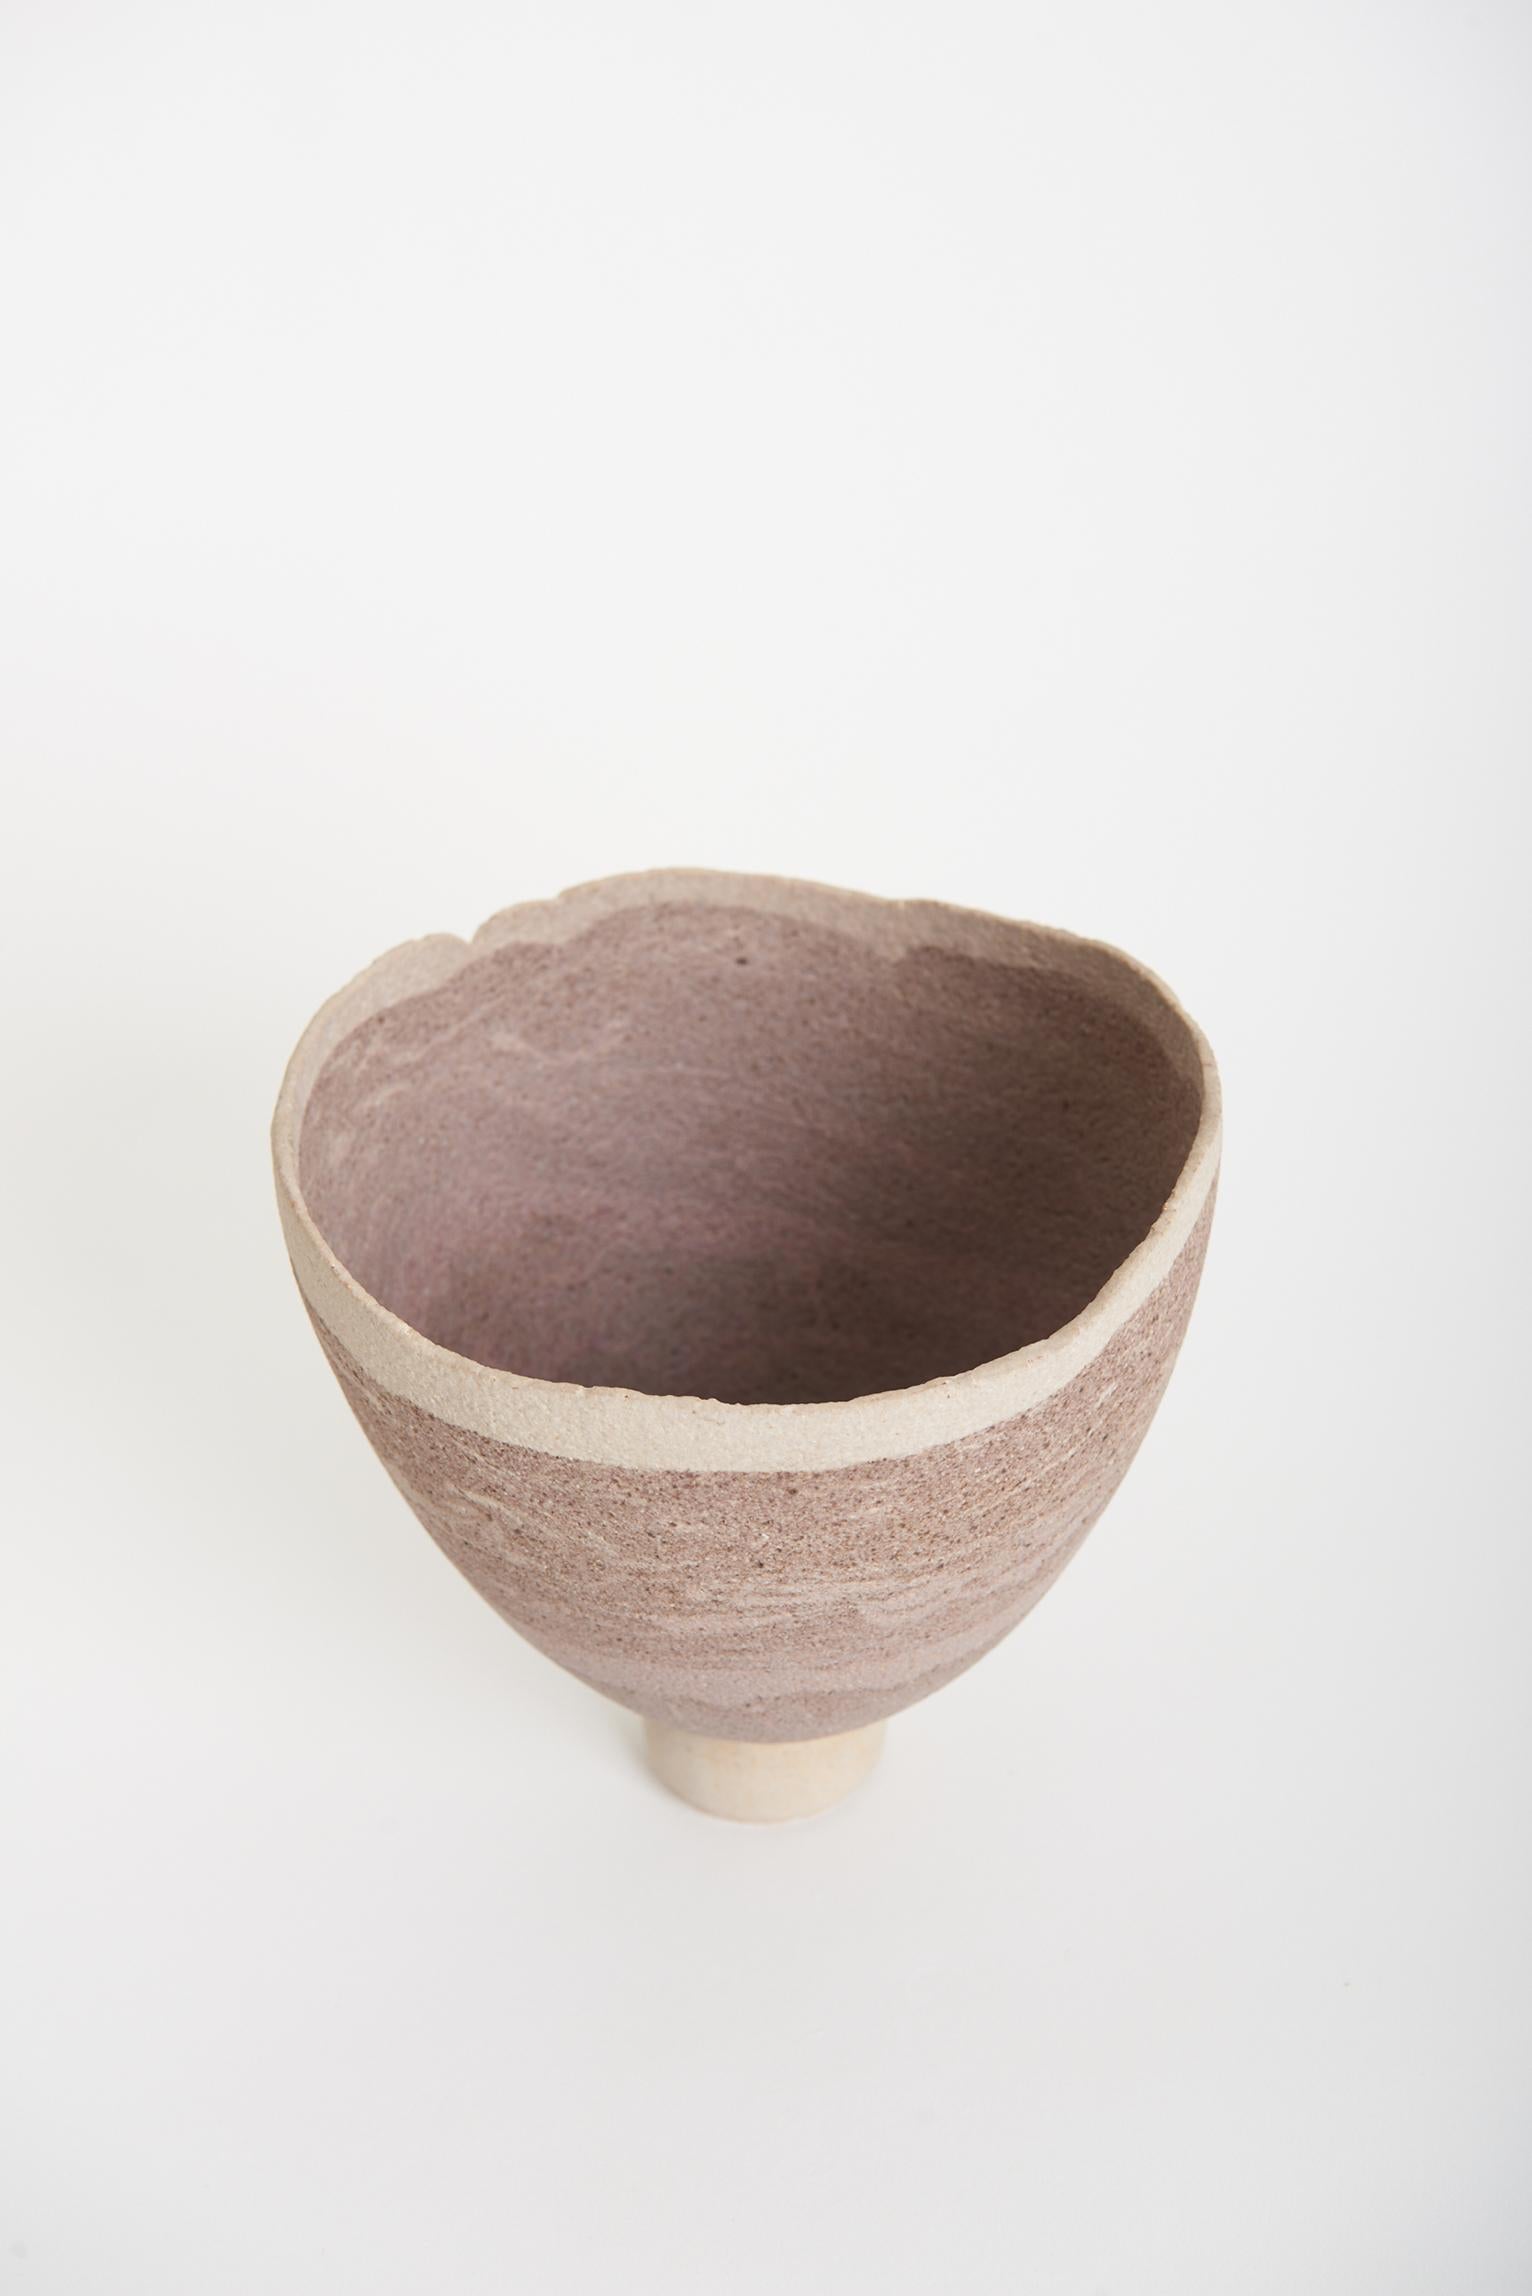 20th Century Studio Pottery Vase